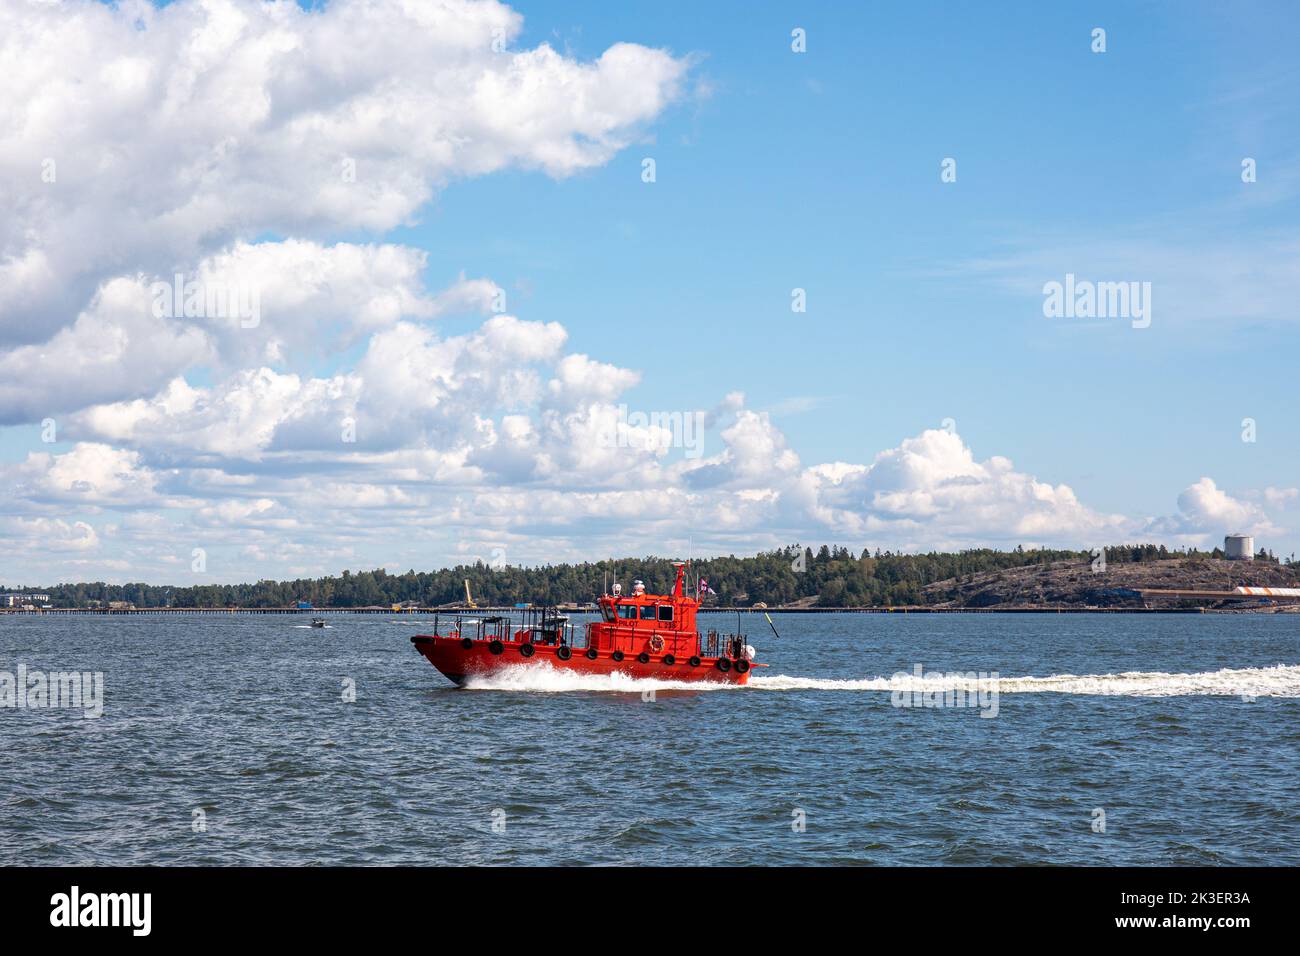 Red pilot boat on Kruunuvuorenselkä in Helsinki, Finland Stock Photo